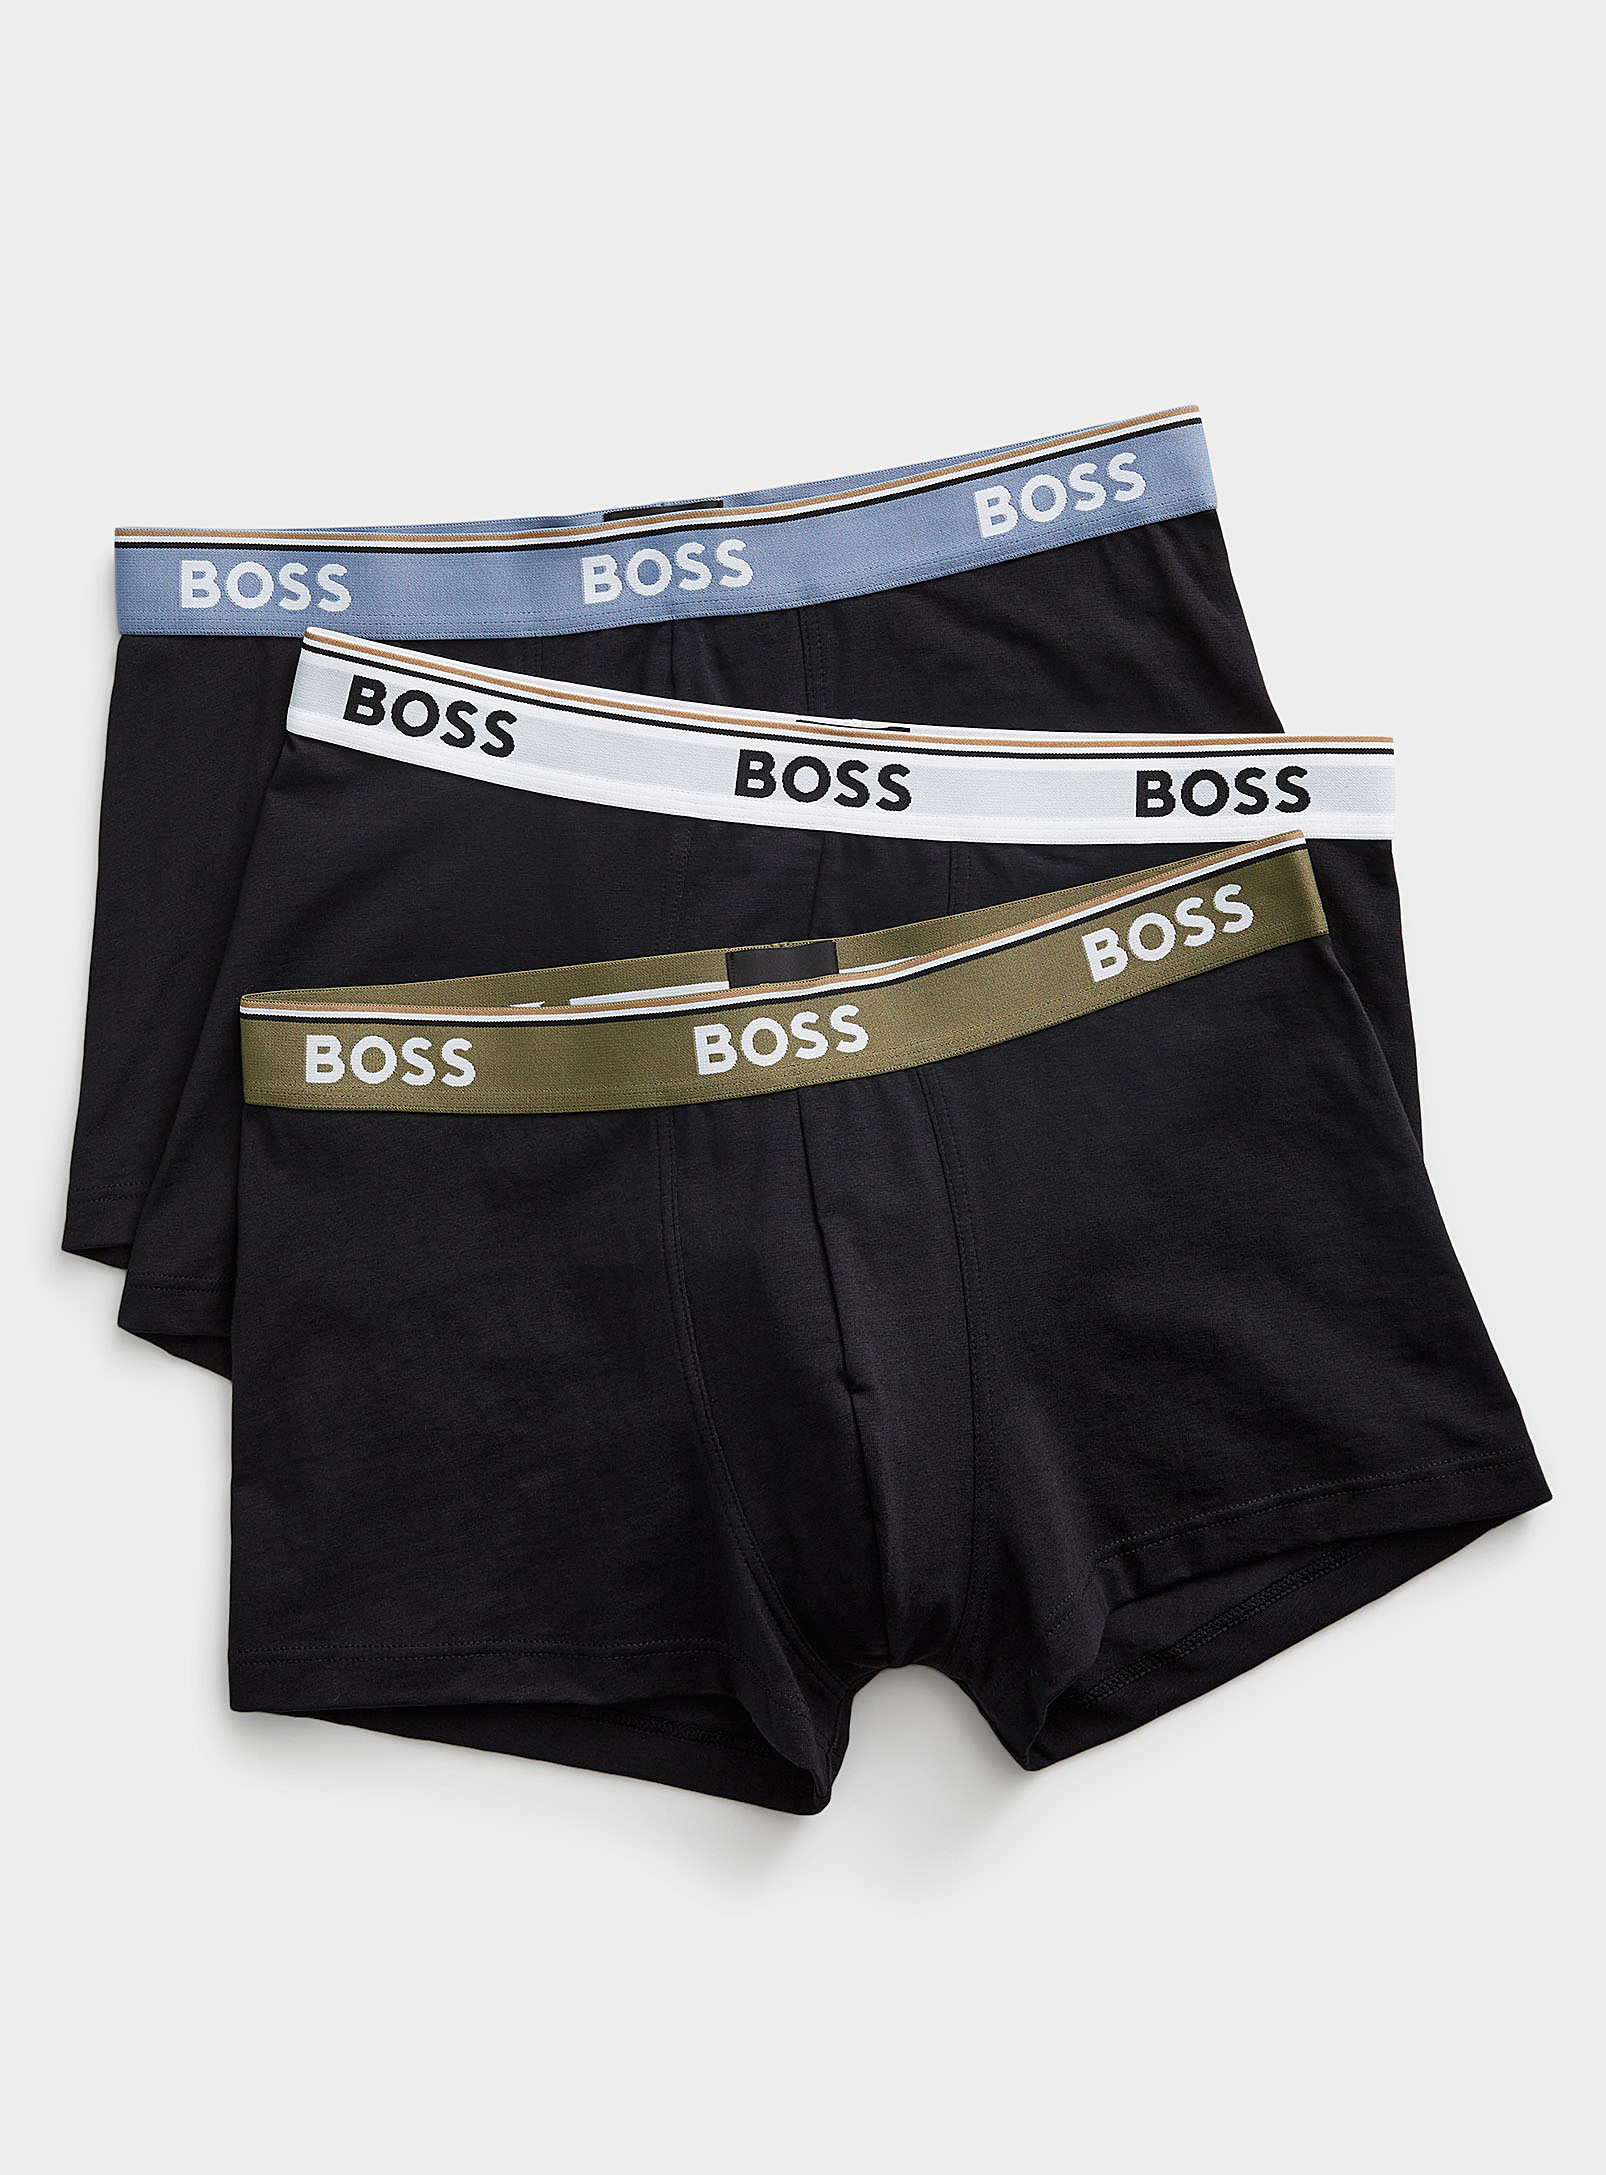 BOSS - Men's Contrasting band trunks 3-pack